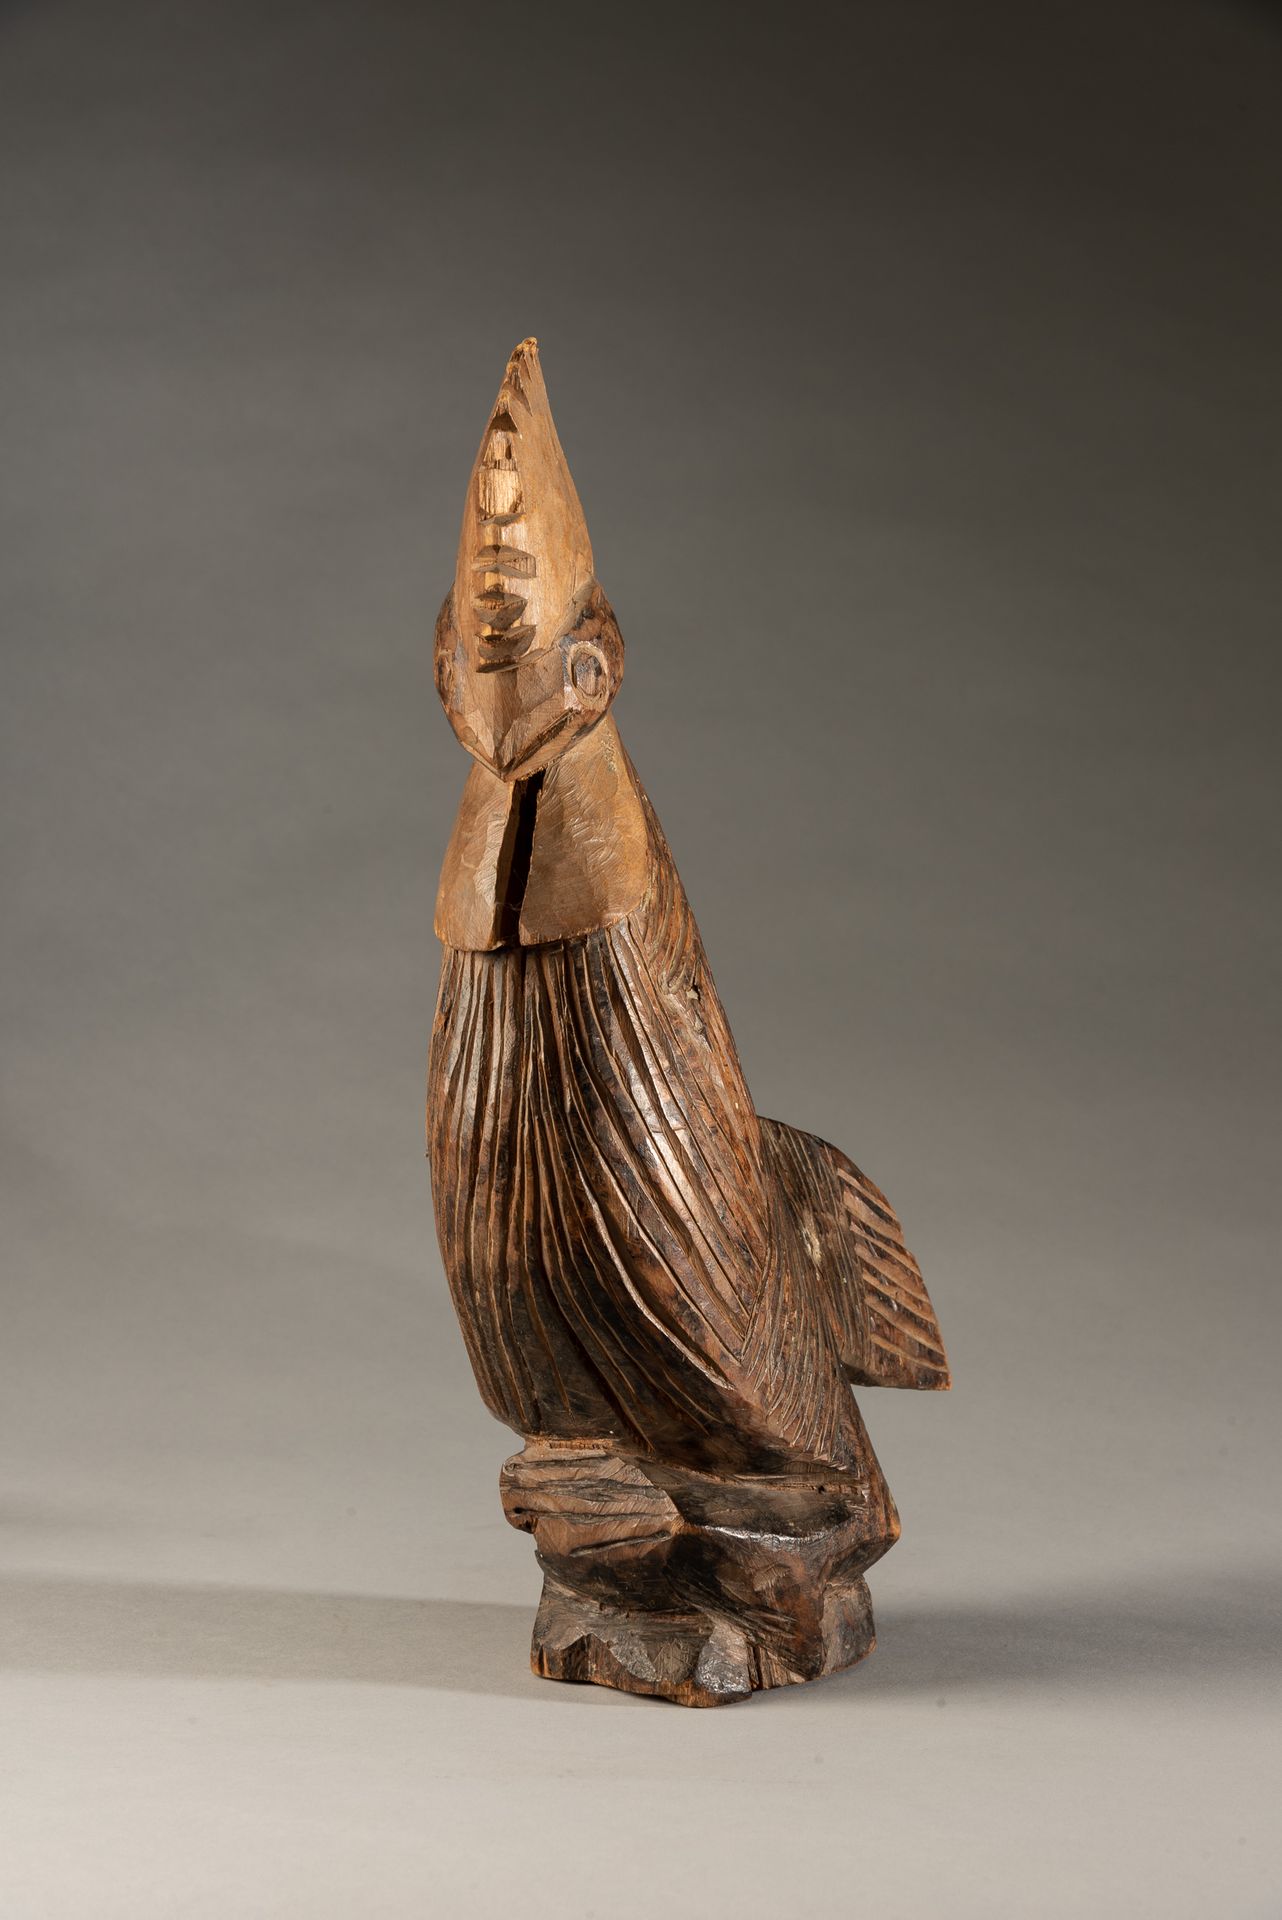 Null "木制公鸡，尼日利亚--木雕的部落公鸡形象。





原产地 : 尼日利亚


尺寸：约33 x 28 x 8厘米





所有物品在出售时都没有&hellip;